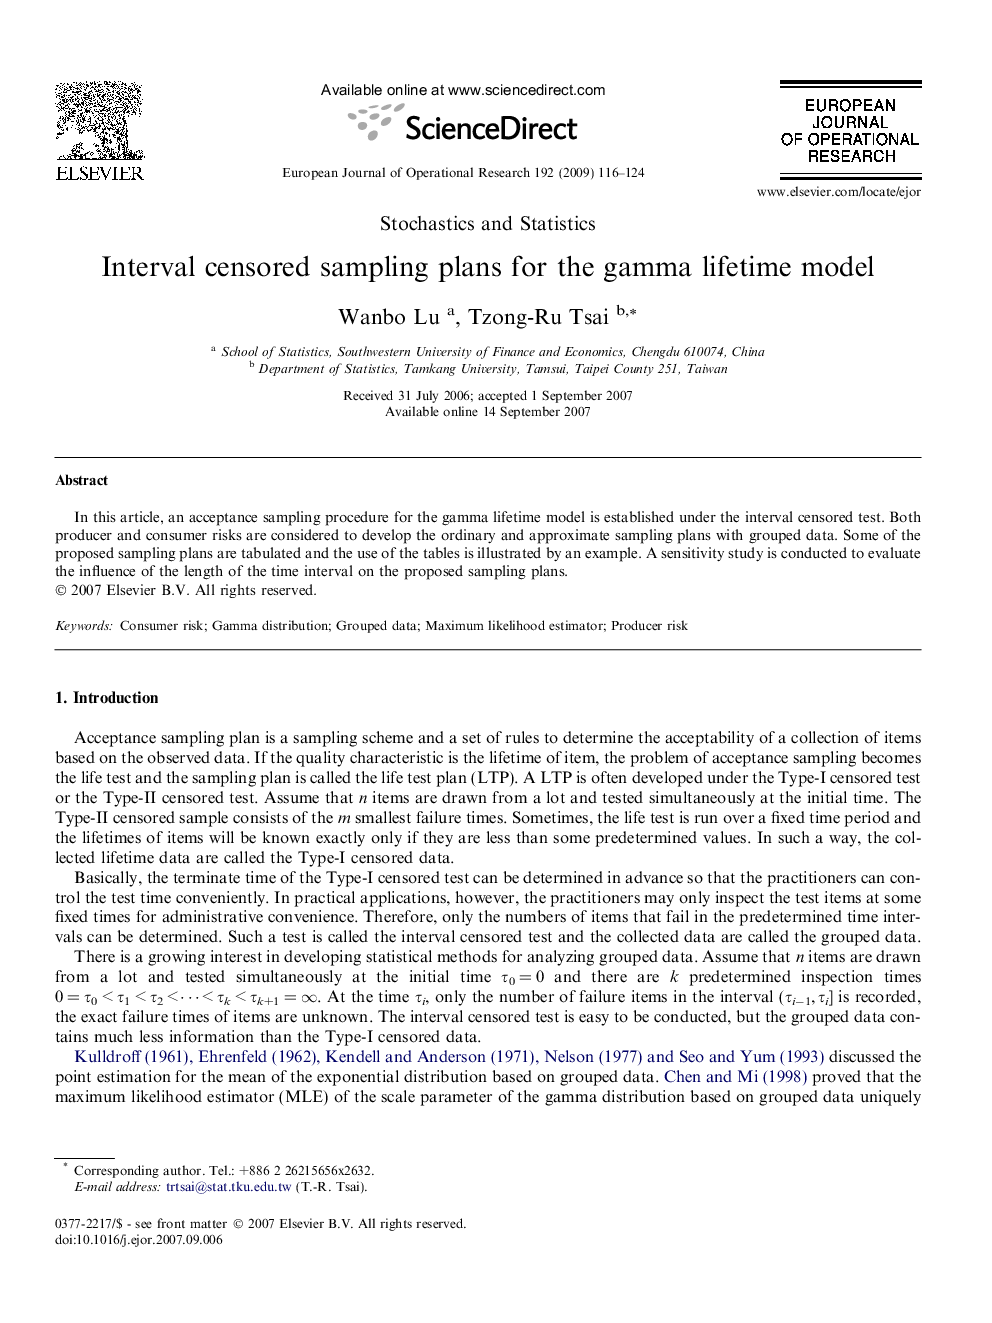 Interval censored sampling plans for the gamma lifetime model